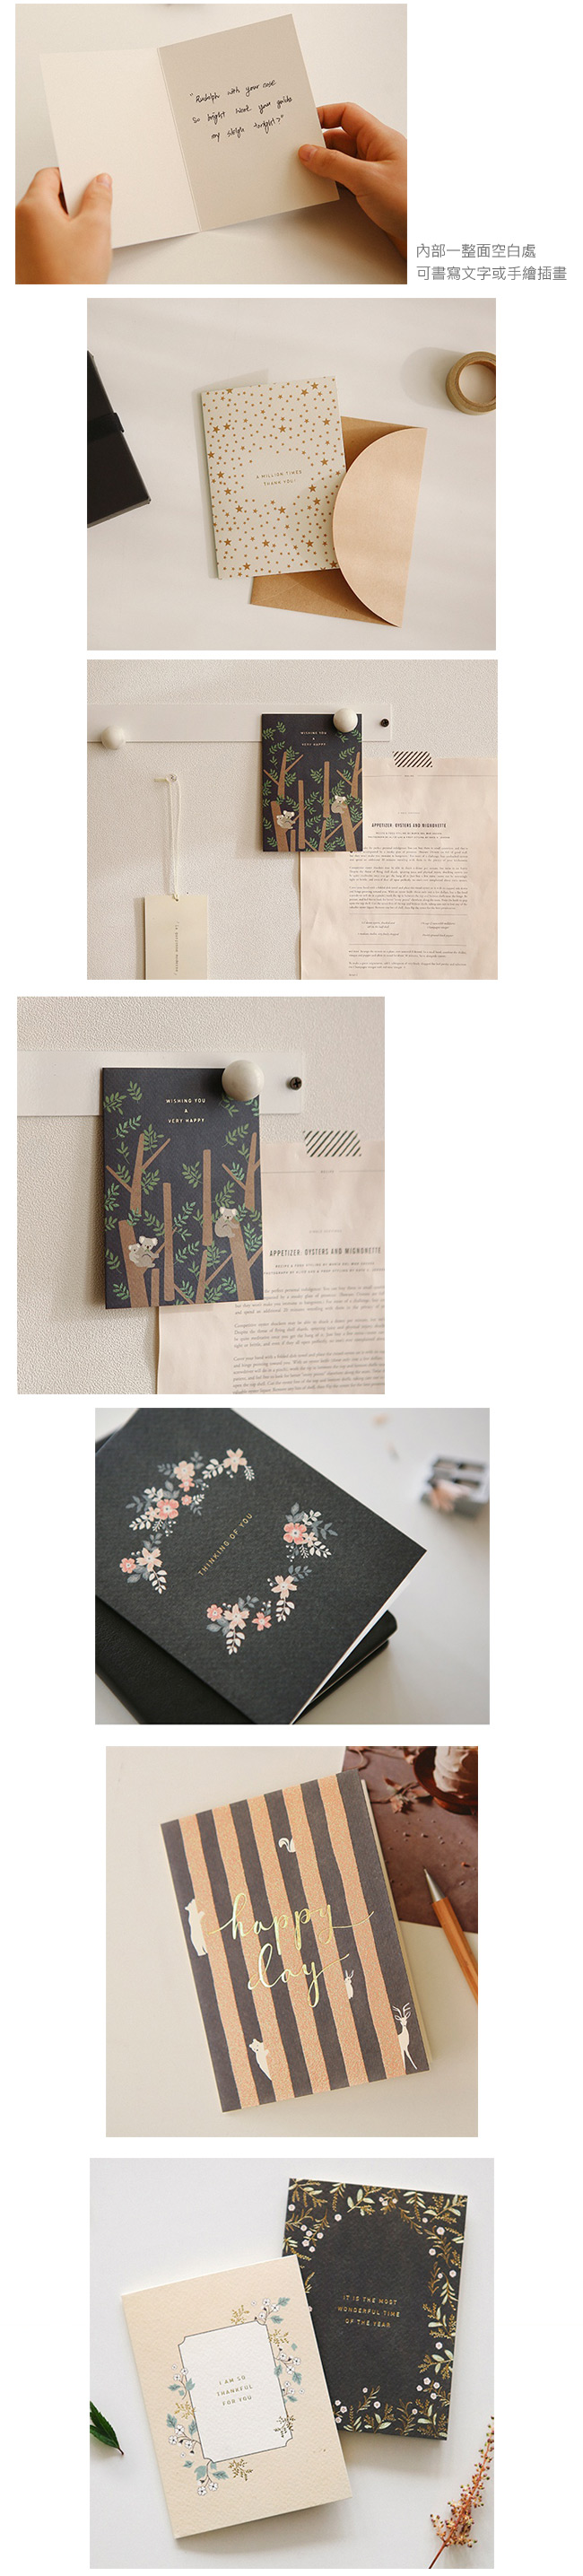 Dailylike 森林物語卡片信封組-09 針葉樹林